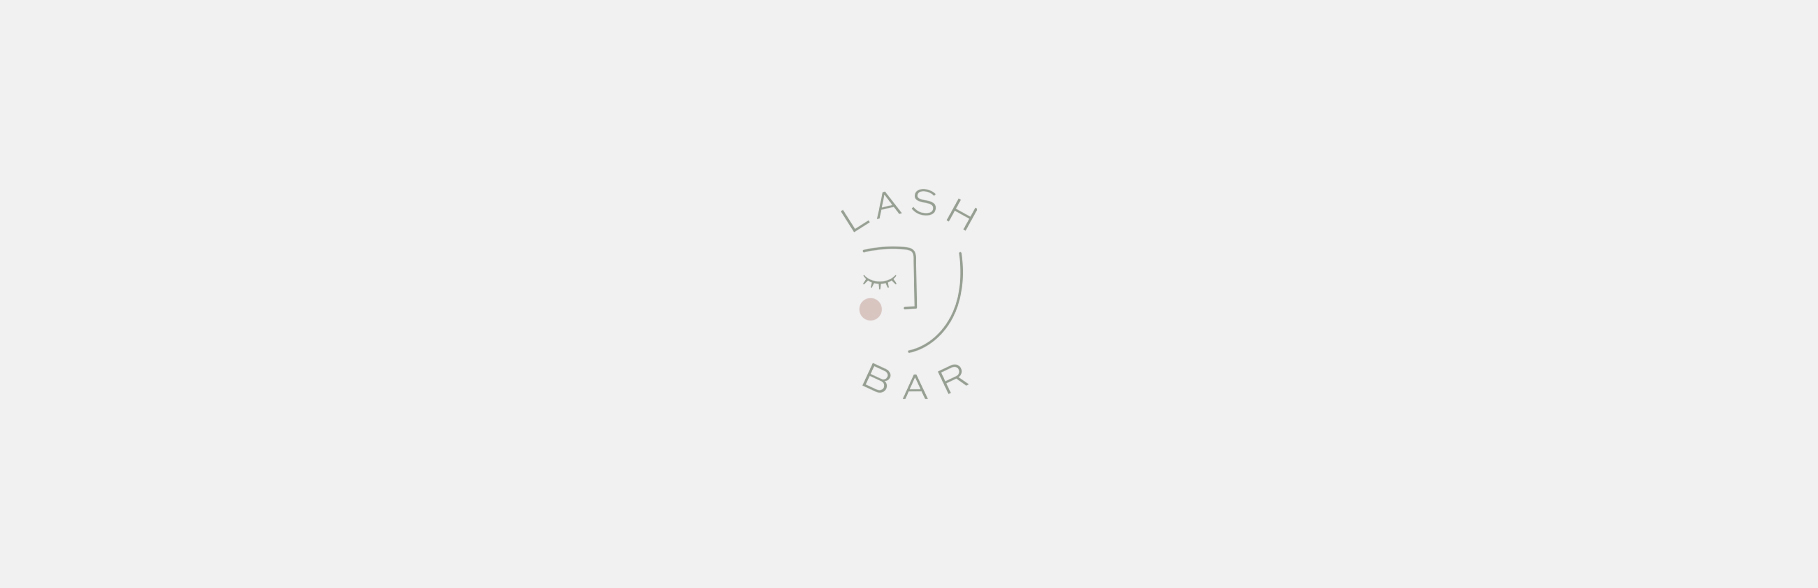 Lash Bar